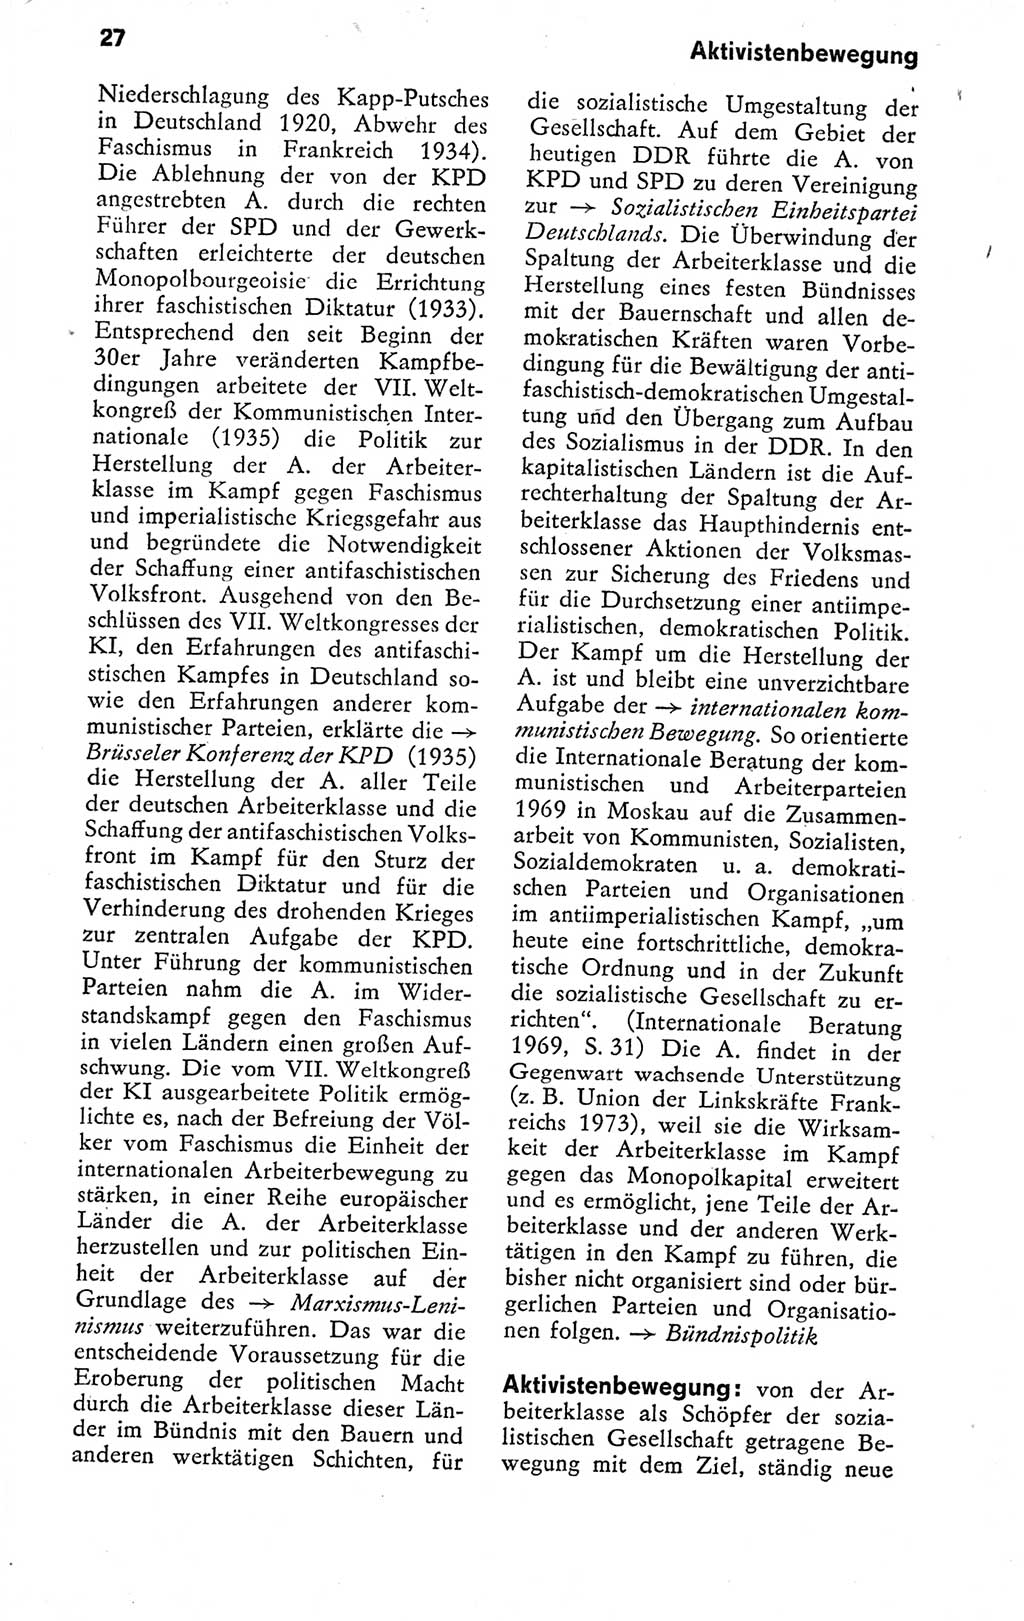 Kleines politisches Wörterbuch [Deutsche Demokratische Republik (DDR)] 1978, Seite 27 (Kl. pol. Wb. DDR 1978, S. 27)